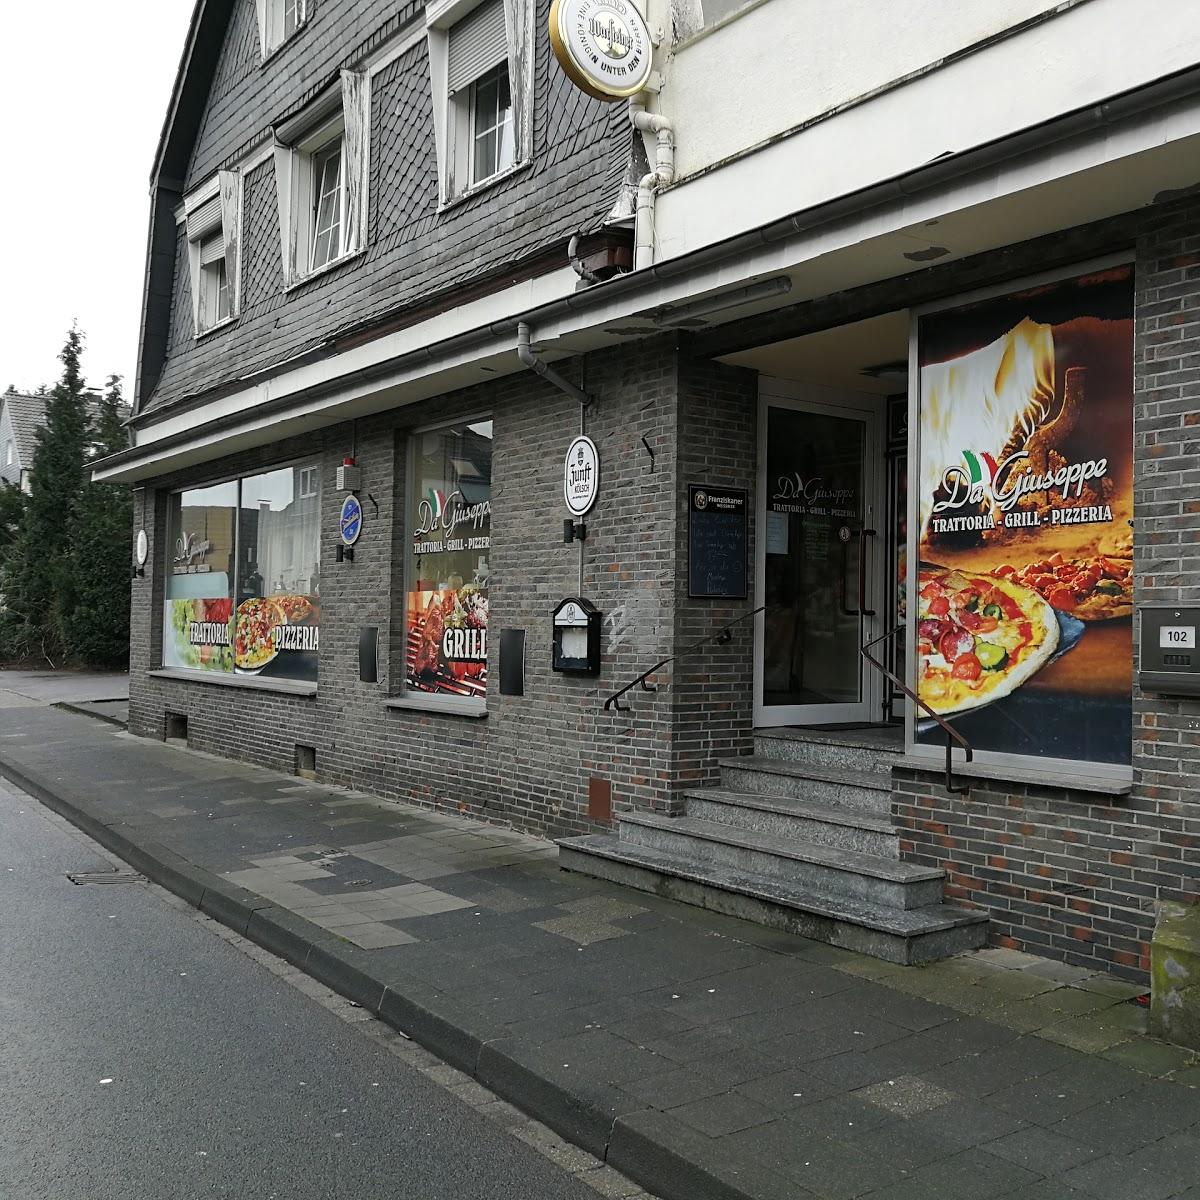 Restaurant "Da Guiseppe" in Solingen